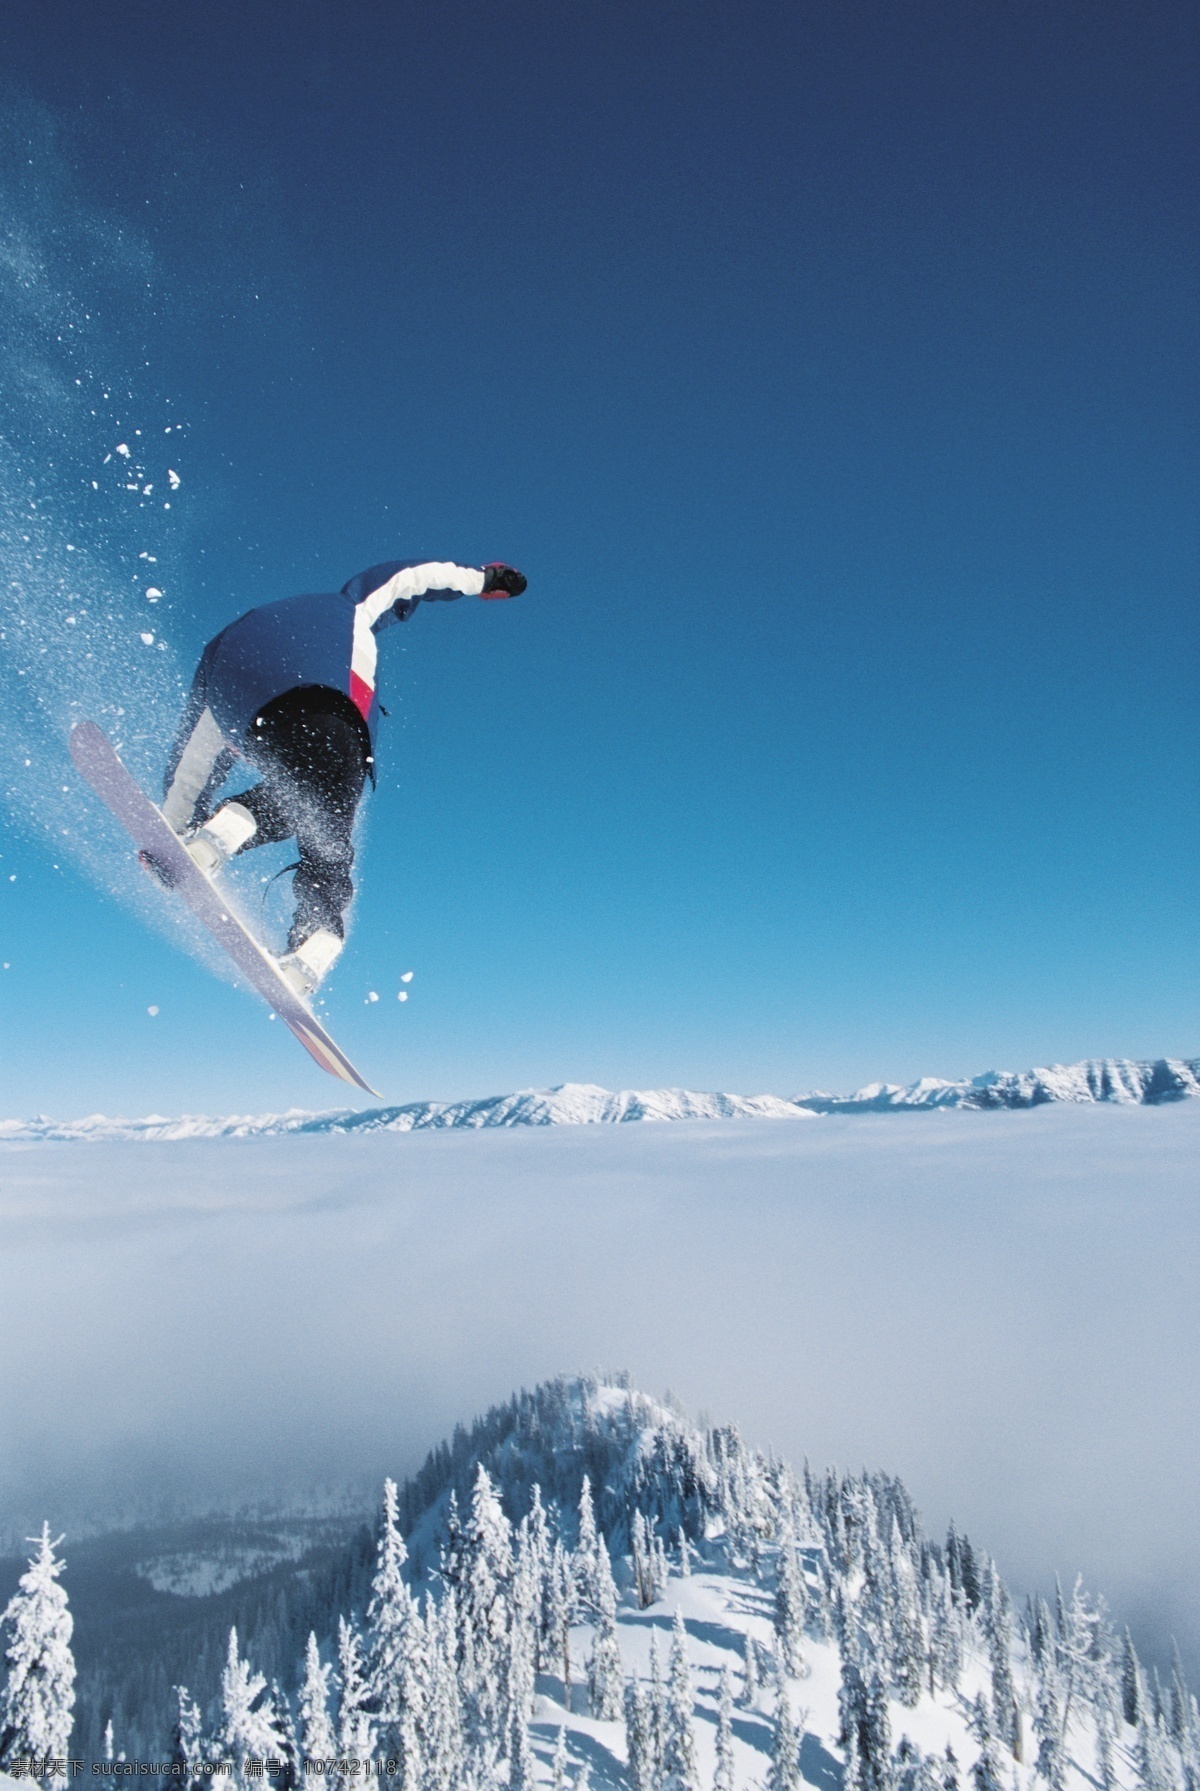 腾空 飞跃 滑雪 运动员 高清 冬天 雪地运动 划雪运动 极限运动 体育项目 运动图片 生活百科 风景 雪景 雪山风光 摄影图片 高清图片 体育运动 蓝色